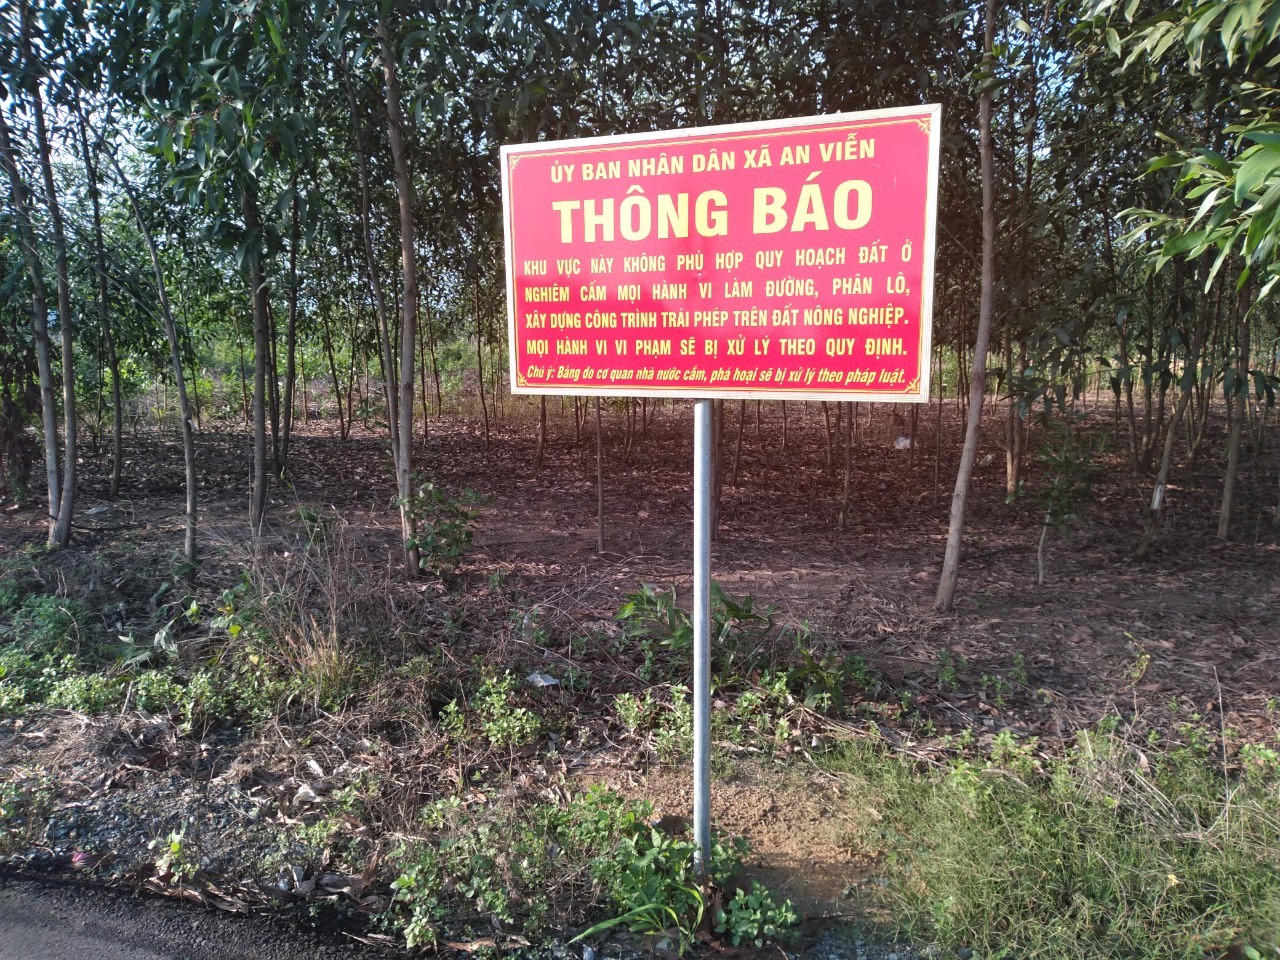 Chi tiết sai phạm đất đai tại điểm nóng xã An Viễn, huyện Trảng Bom - Ảnh 2.